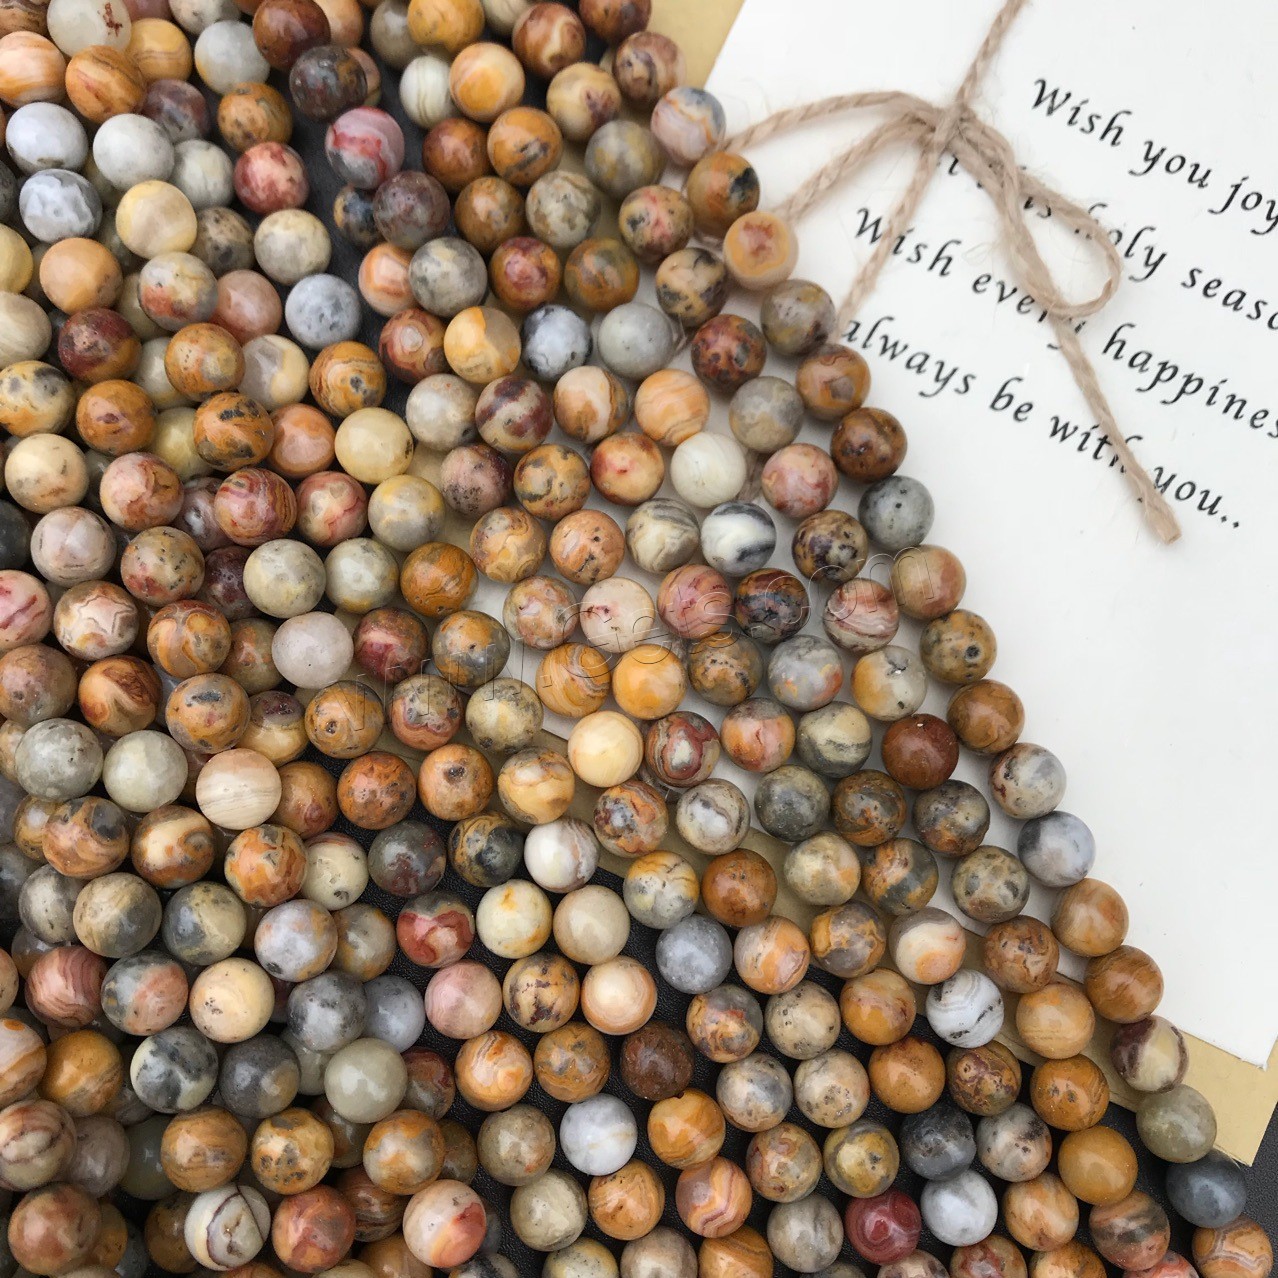 Natürliche verrückte Achat Perlen, Verrückter Achat, rund, poliert, verschiedene Größen vorhanden, Bohrung:ca. 1mm, verkauft von Strang